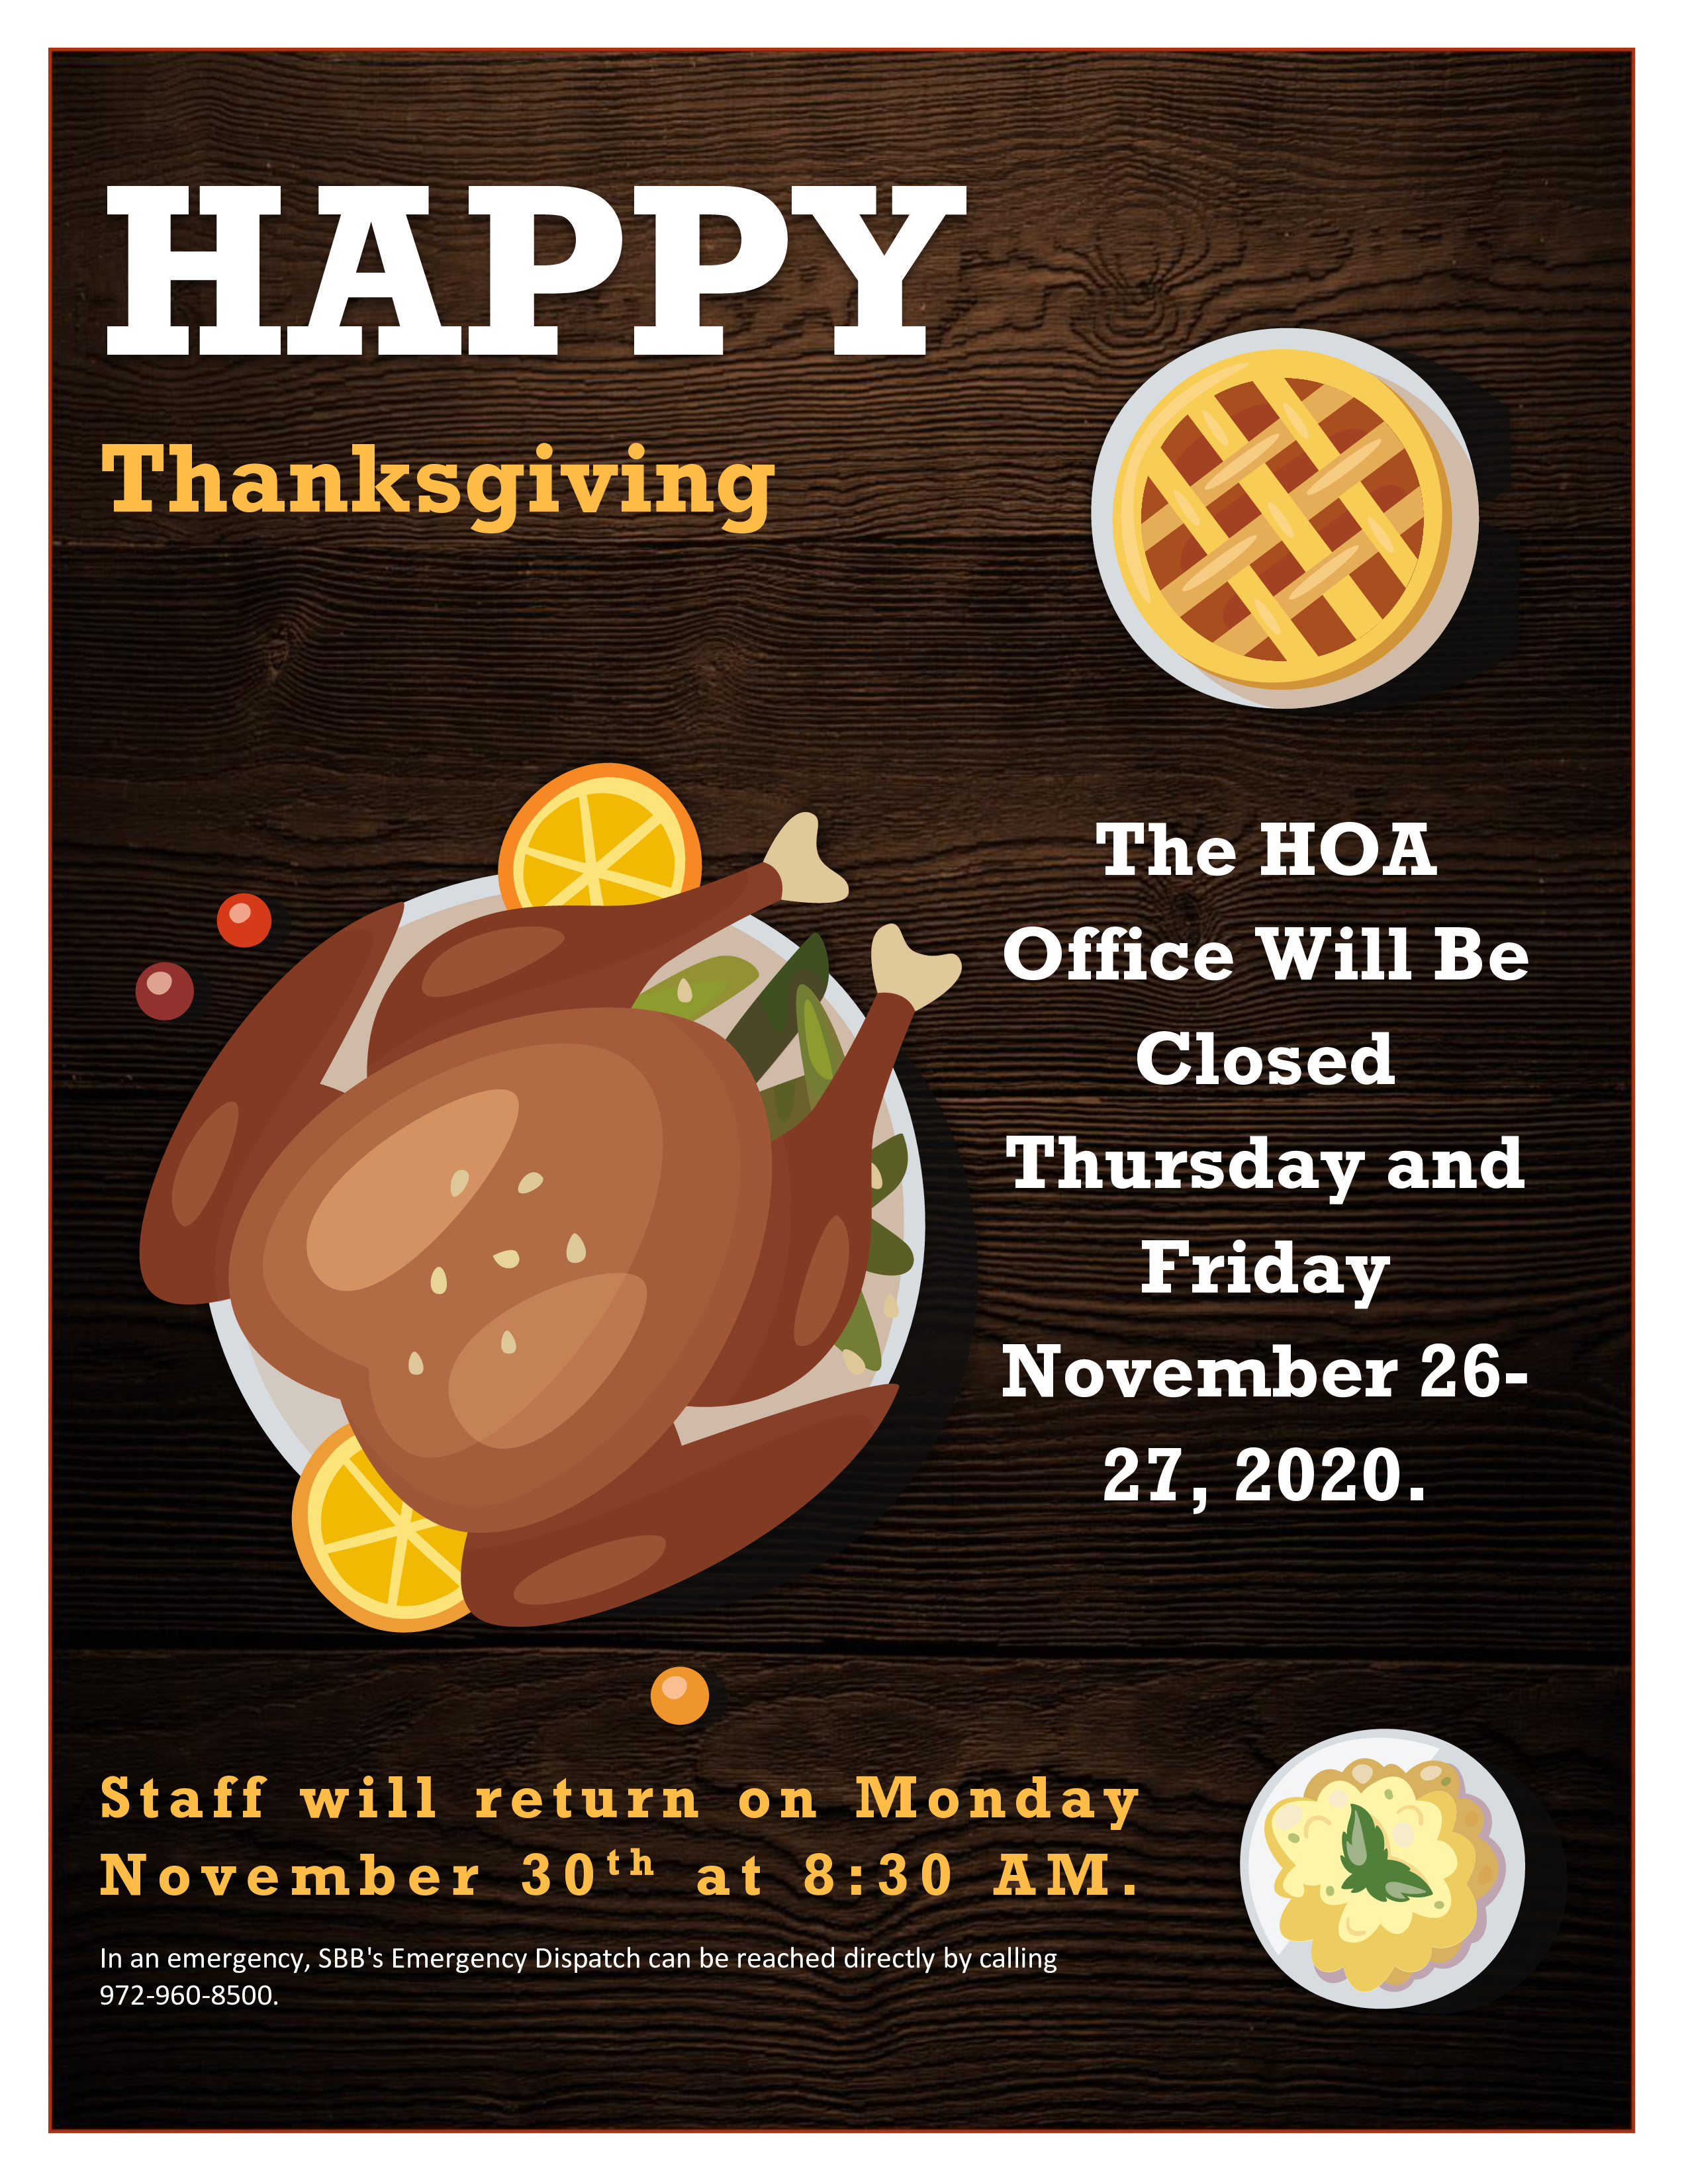 HOA Office Closed November 26-27